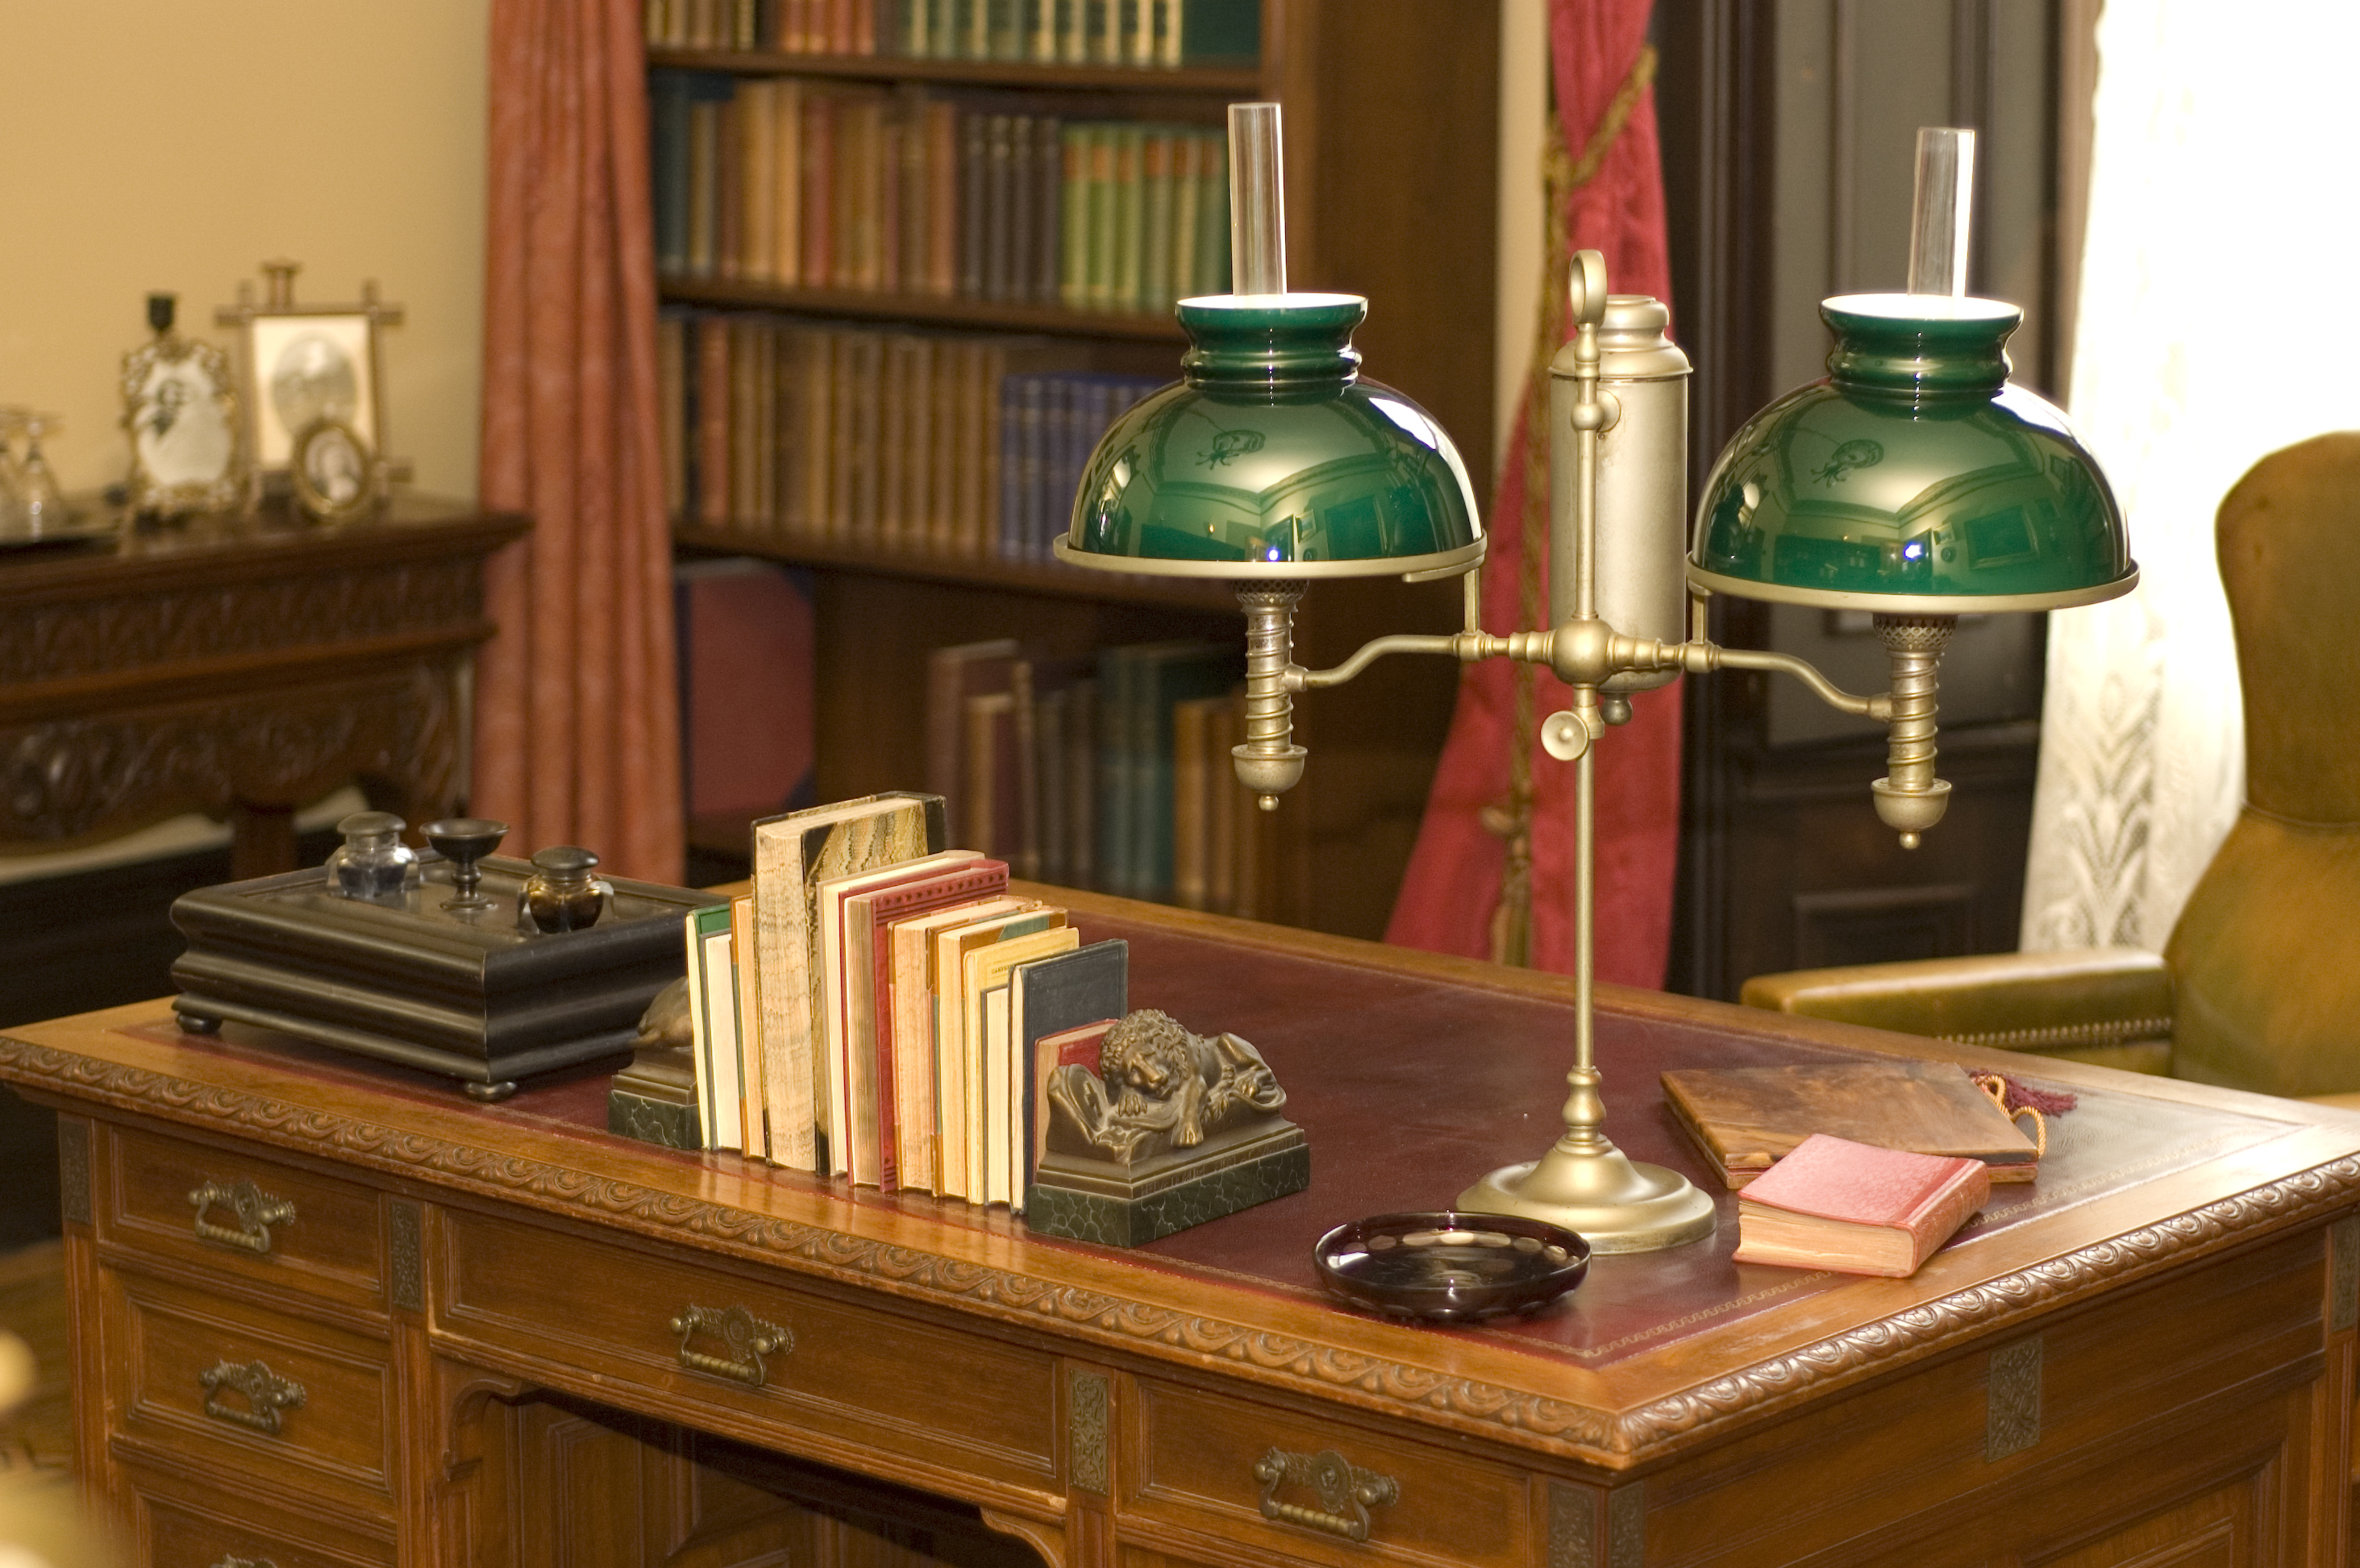 Une lampe à huile classique et des livres placés sur un bureau antique | Source : Shutterstock